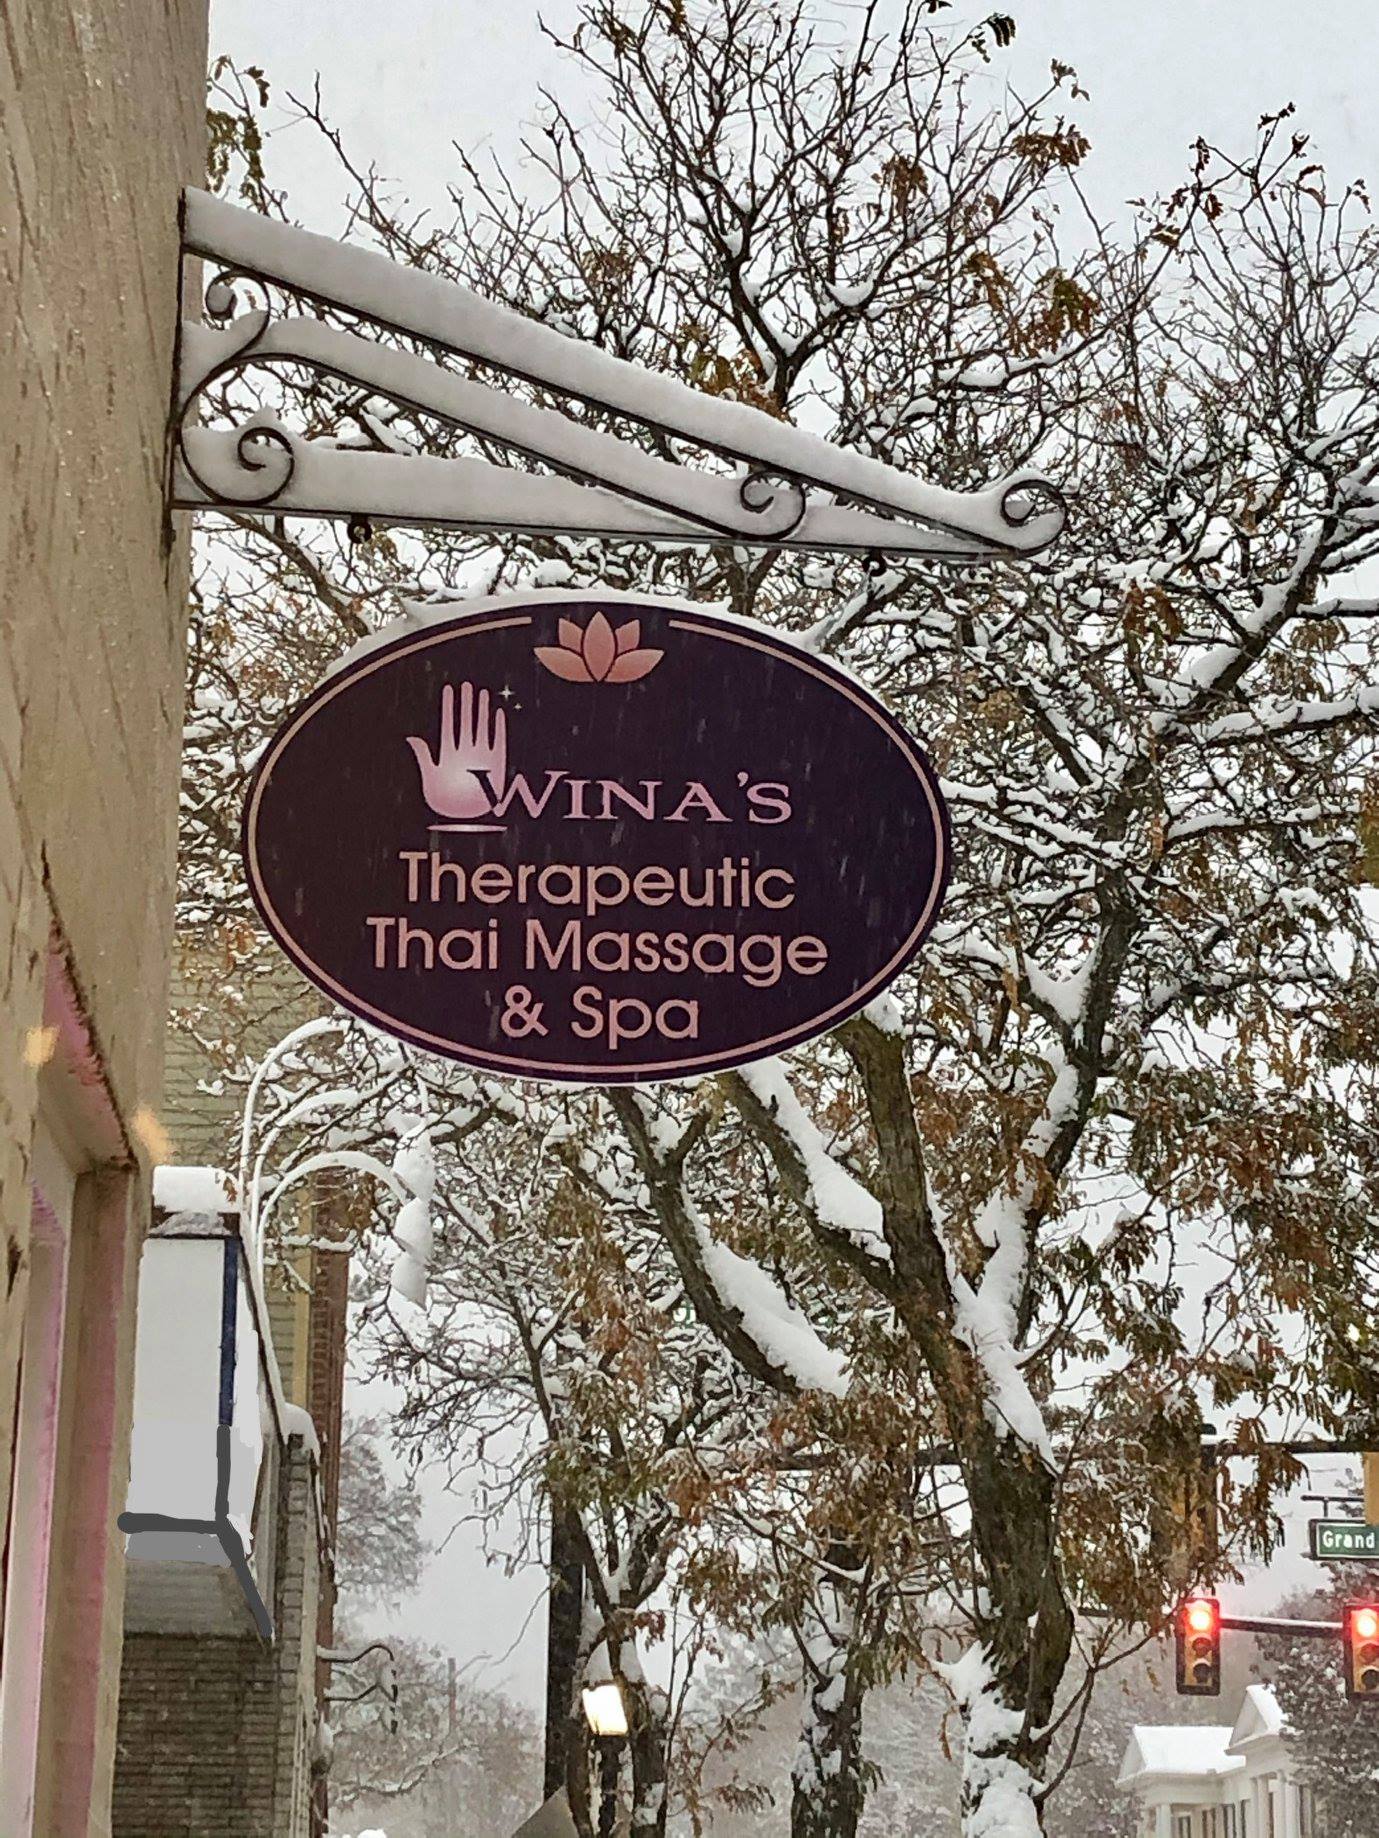 Wina's Therapeutic Thai Massage & Spa